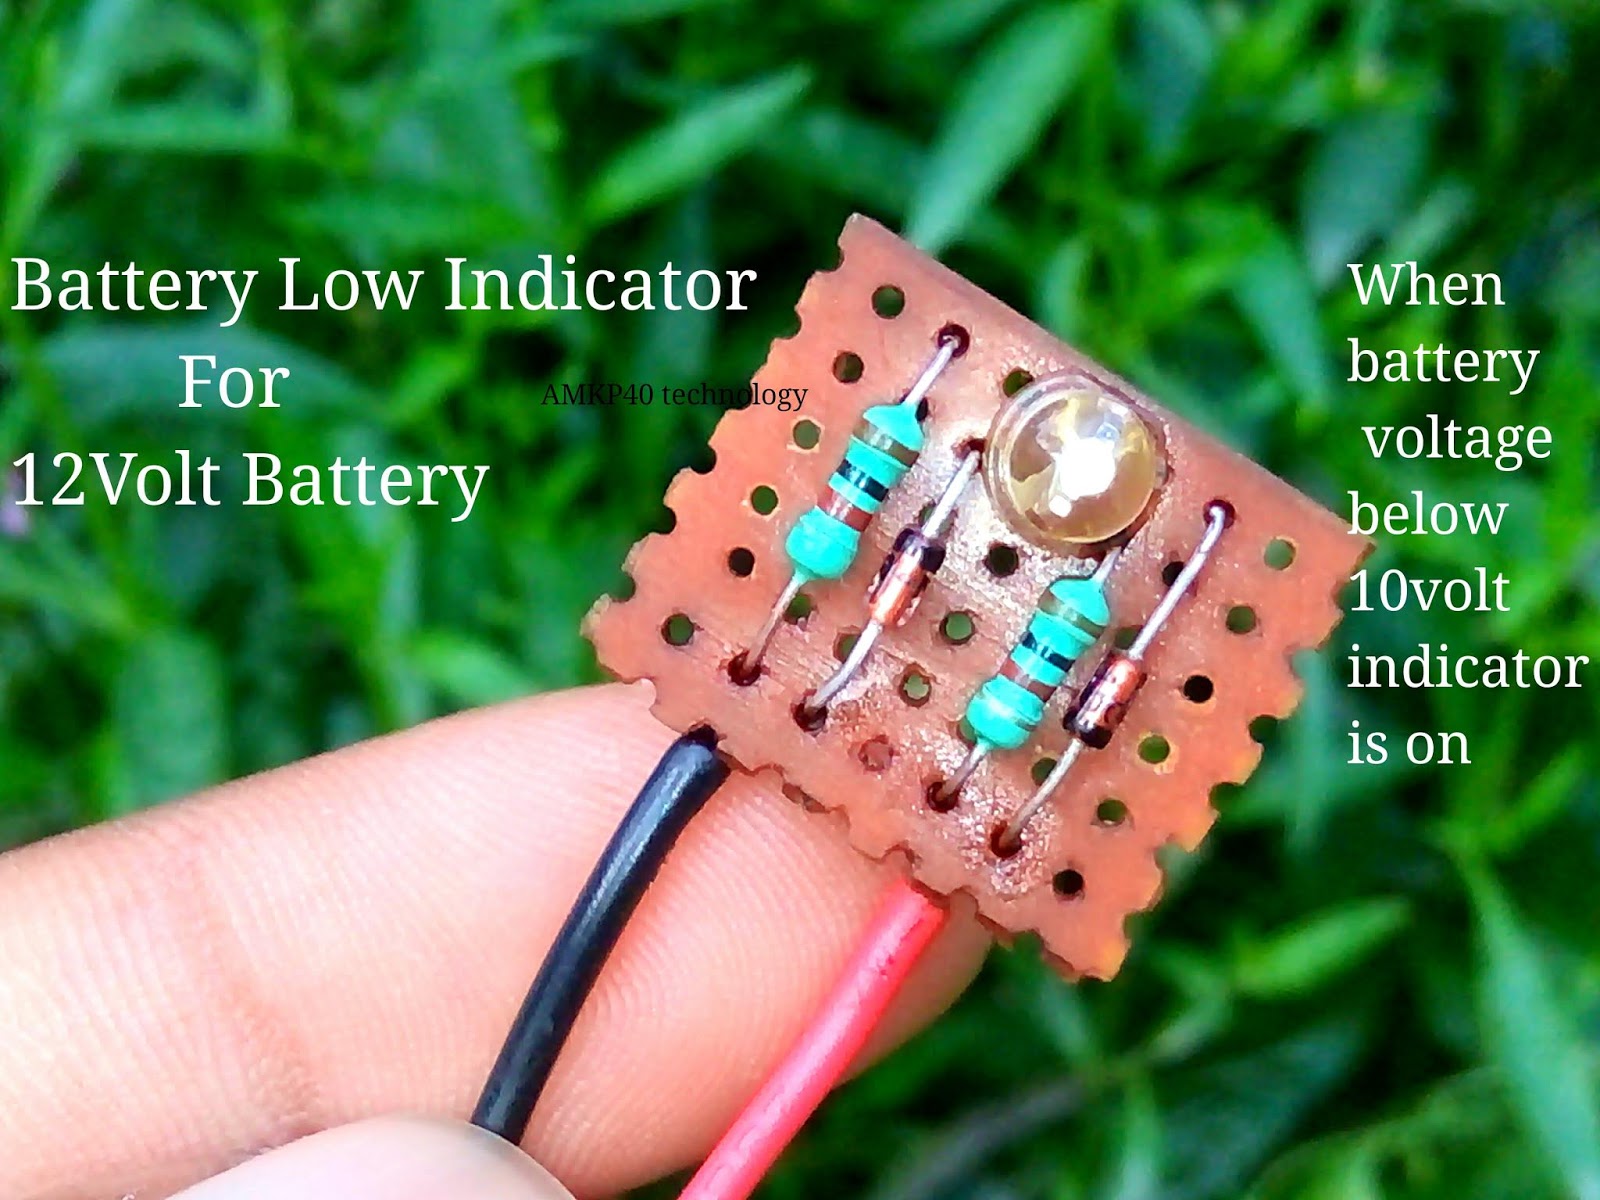 Weak battery. Low Battery car indicator. Indicator Battery Voltage. Battery Level indicator. Voltage indicator цветной.